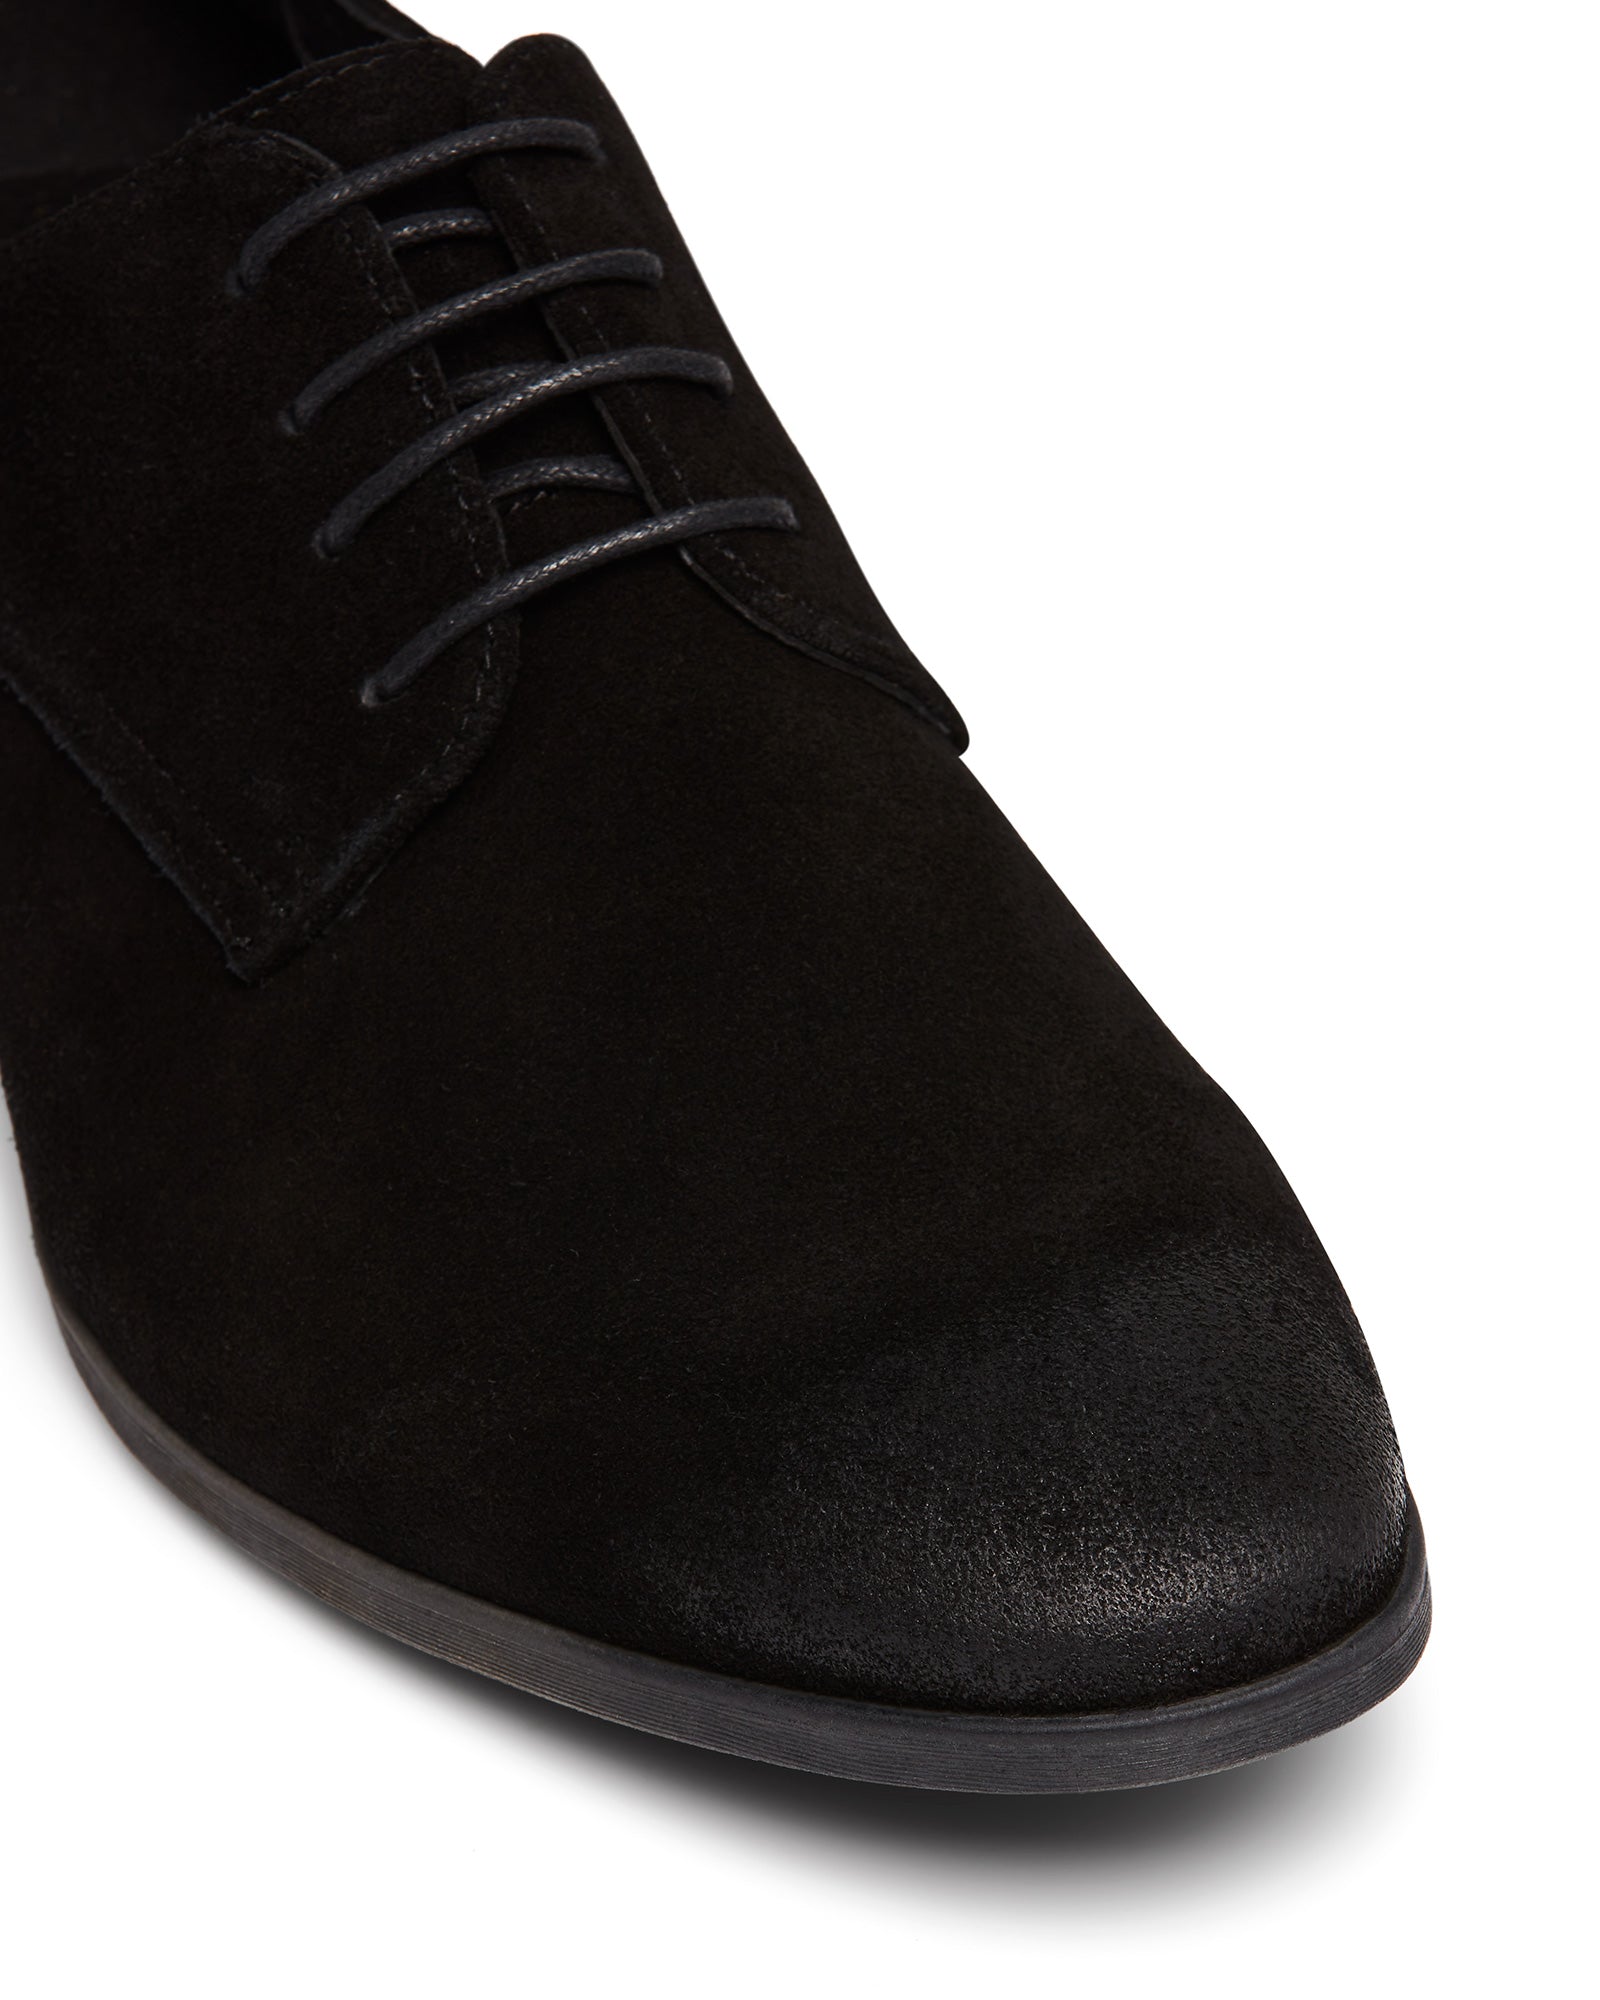 Uncut Shoes Tremblant Black | Men's Leather Dress Shoe | Derby | Lace Up 